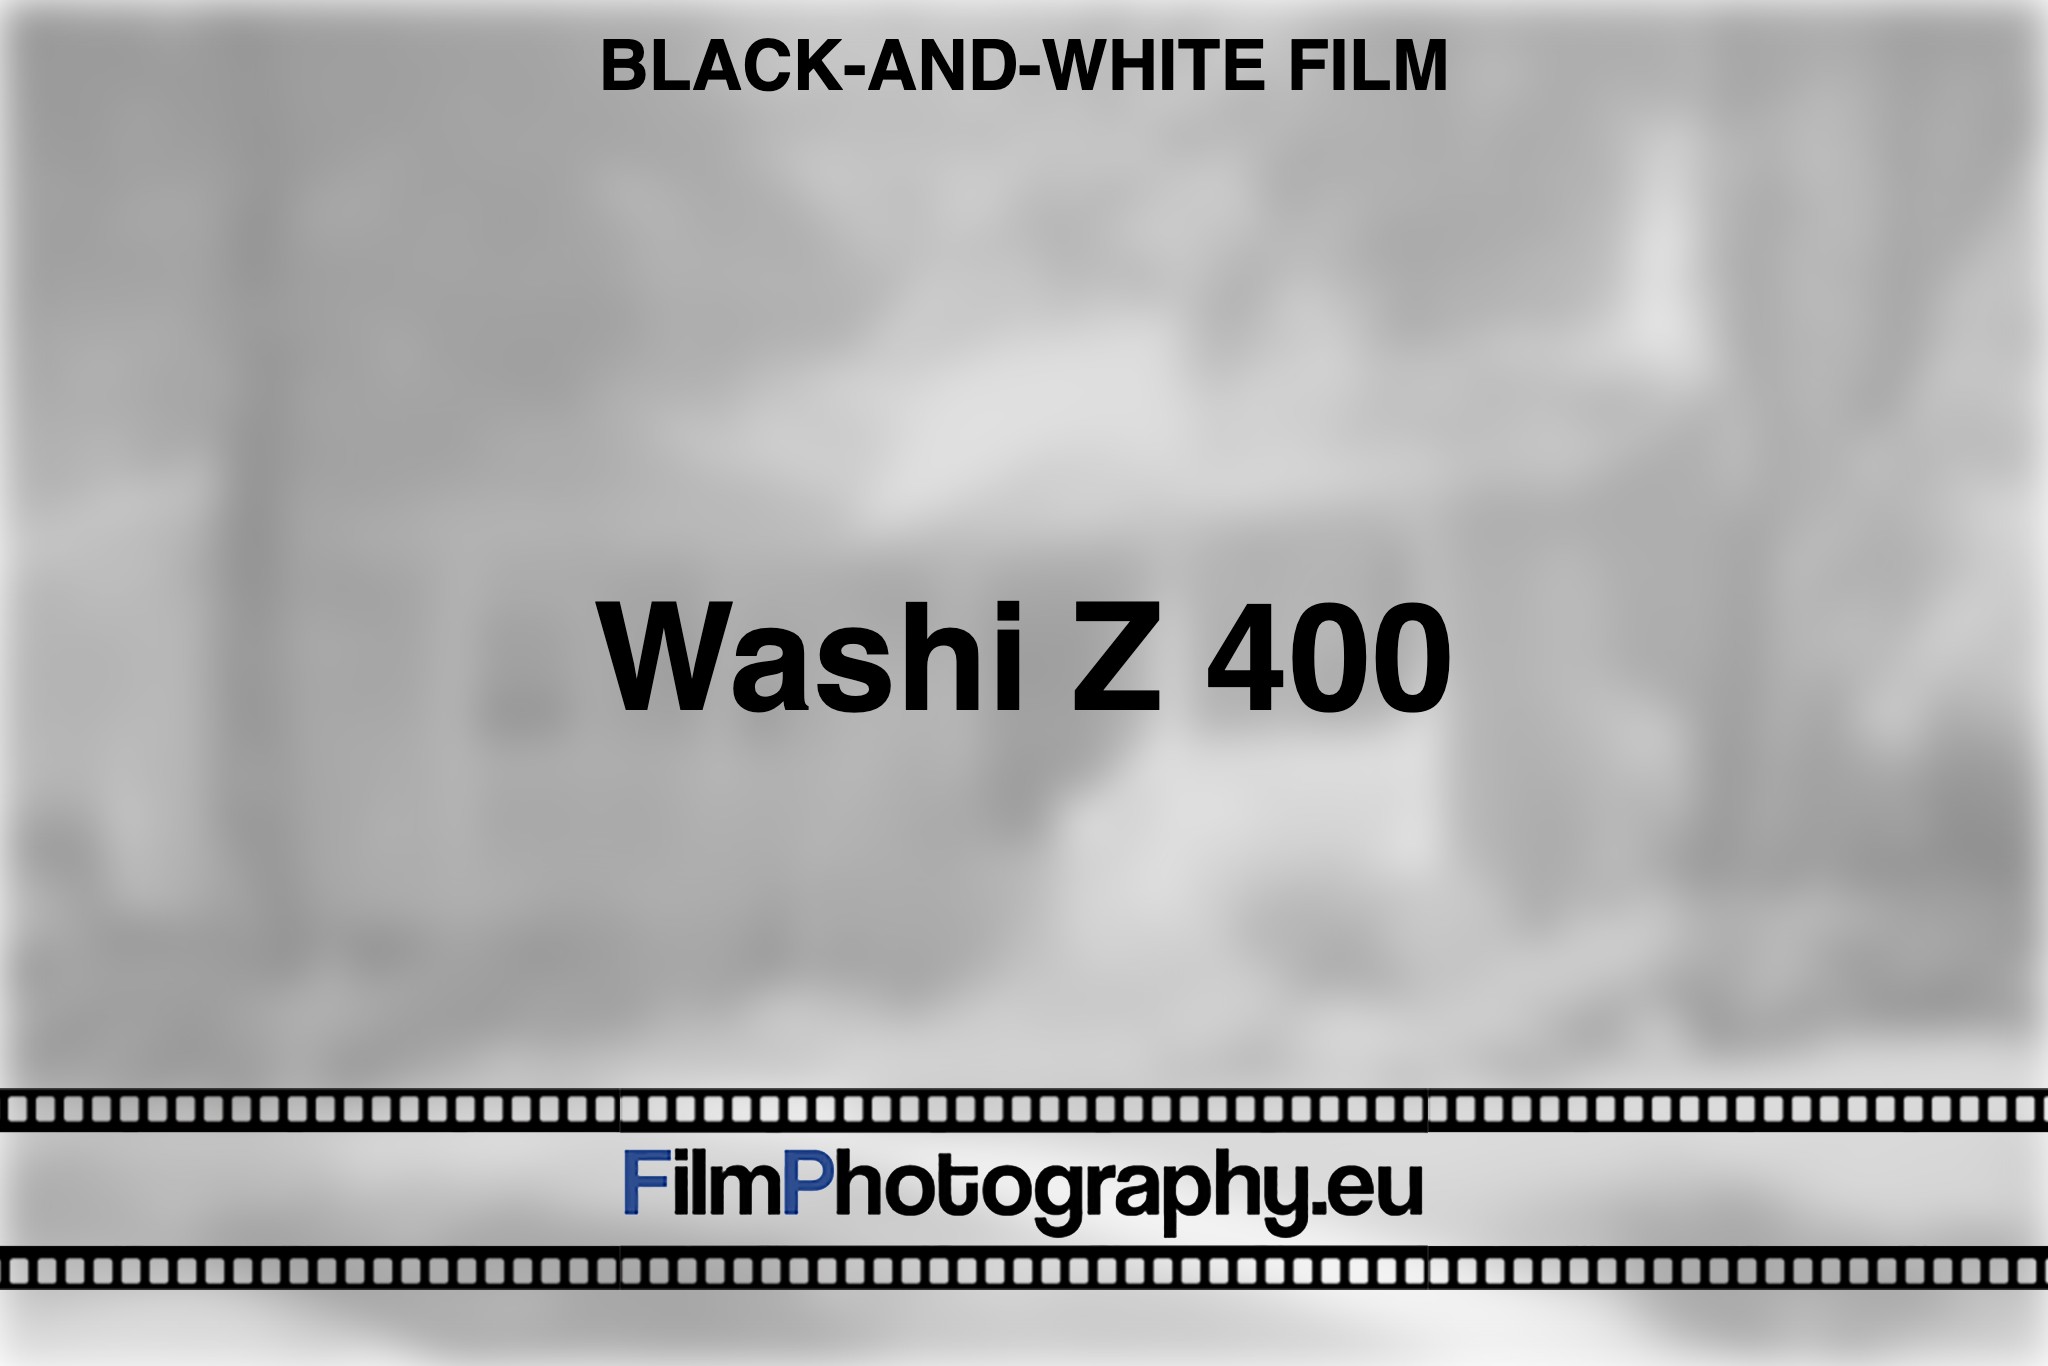 washi-z-400-black-and-white-film-bnv